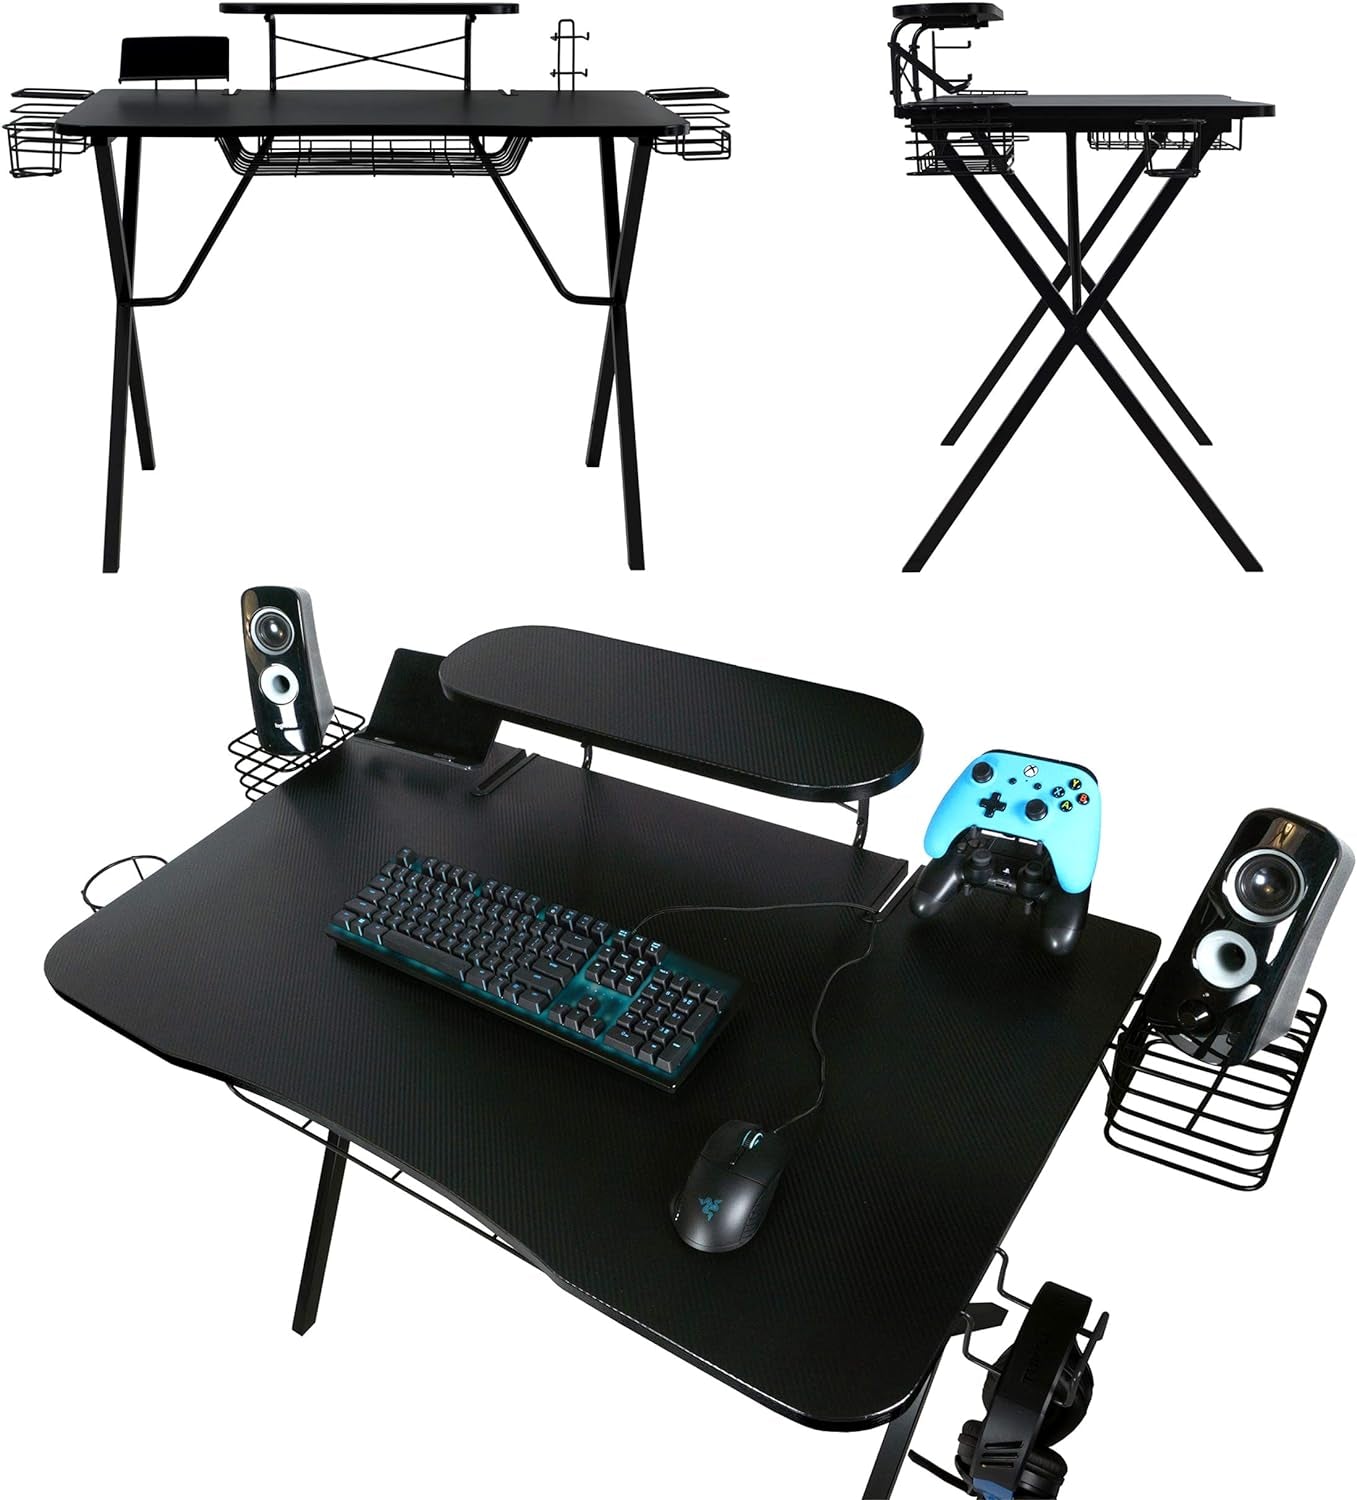 Gaming Desk with Carbon-Fiber Desktop, X-Legs, Detachable Monitor Platform, Tablet/Phone Holder, Speaker Stands - Black